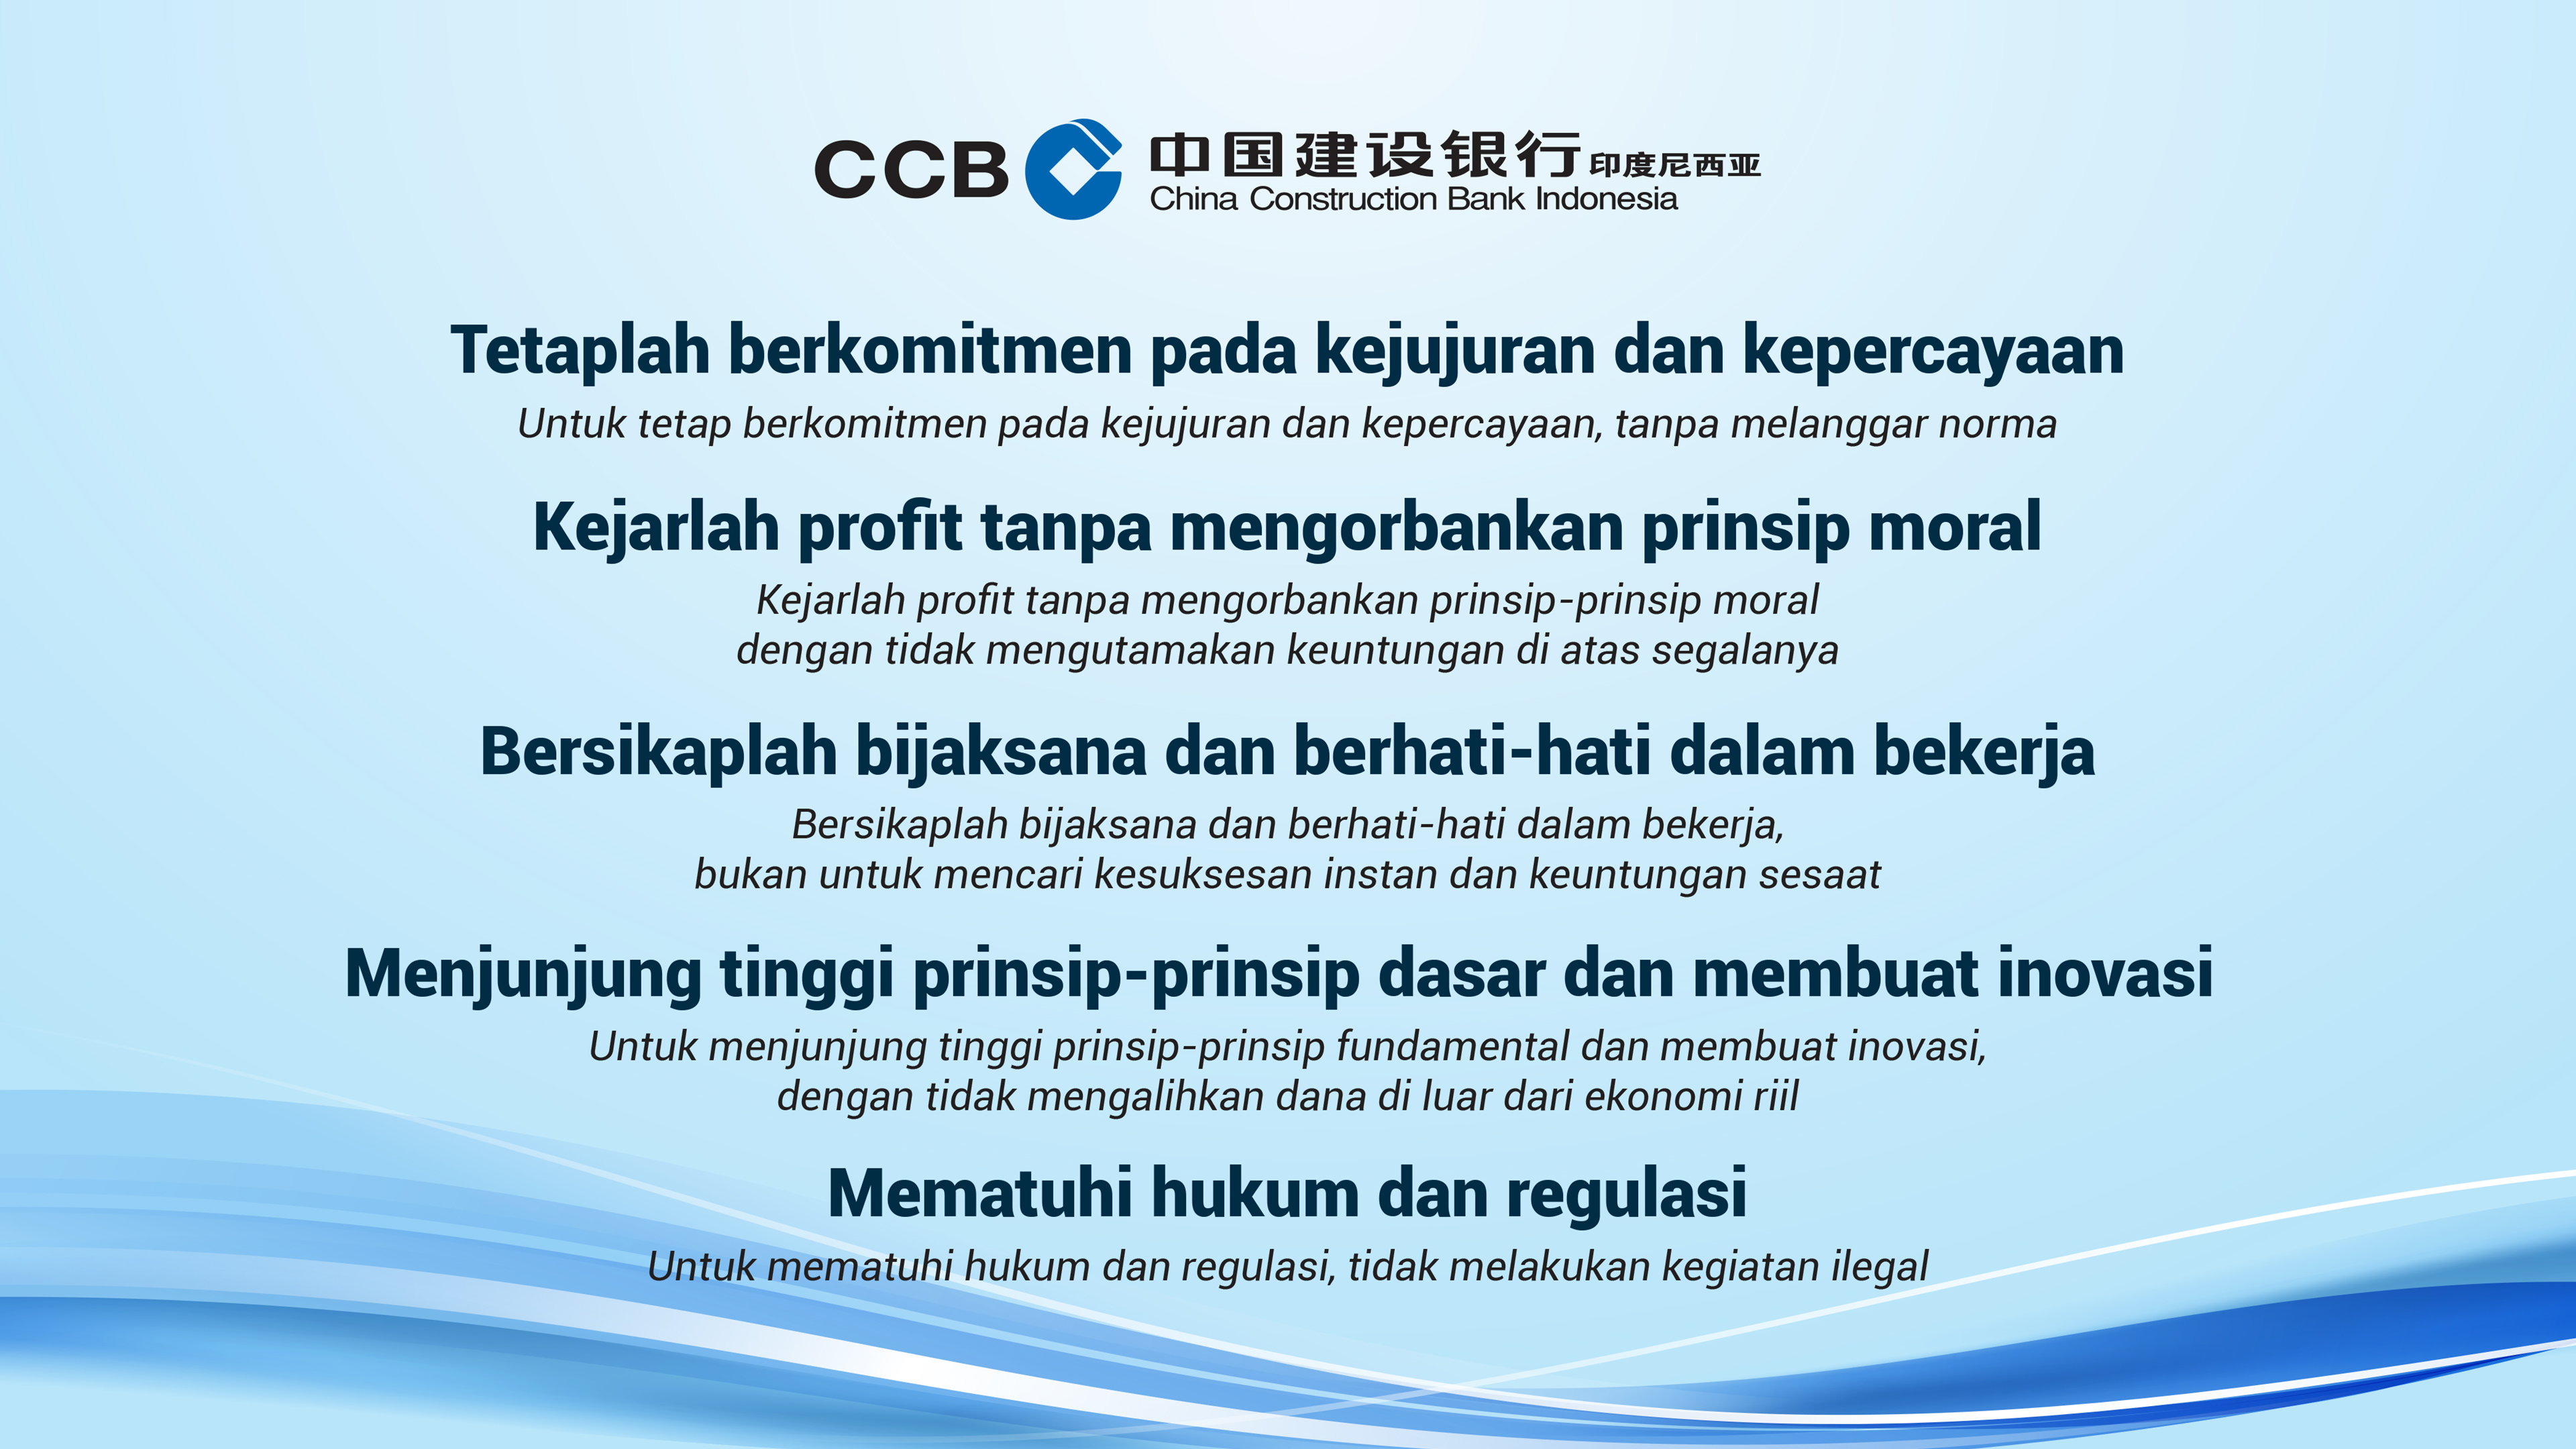 CCB Corporate Culture